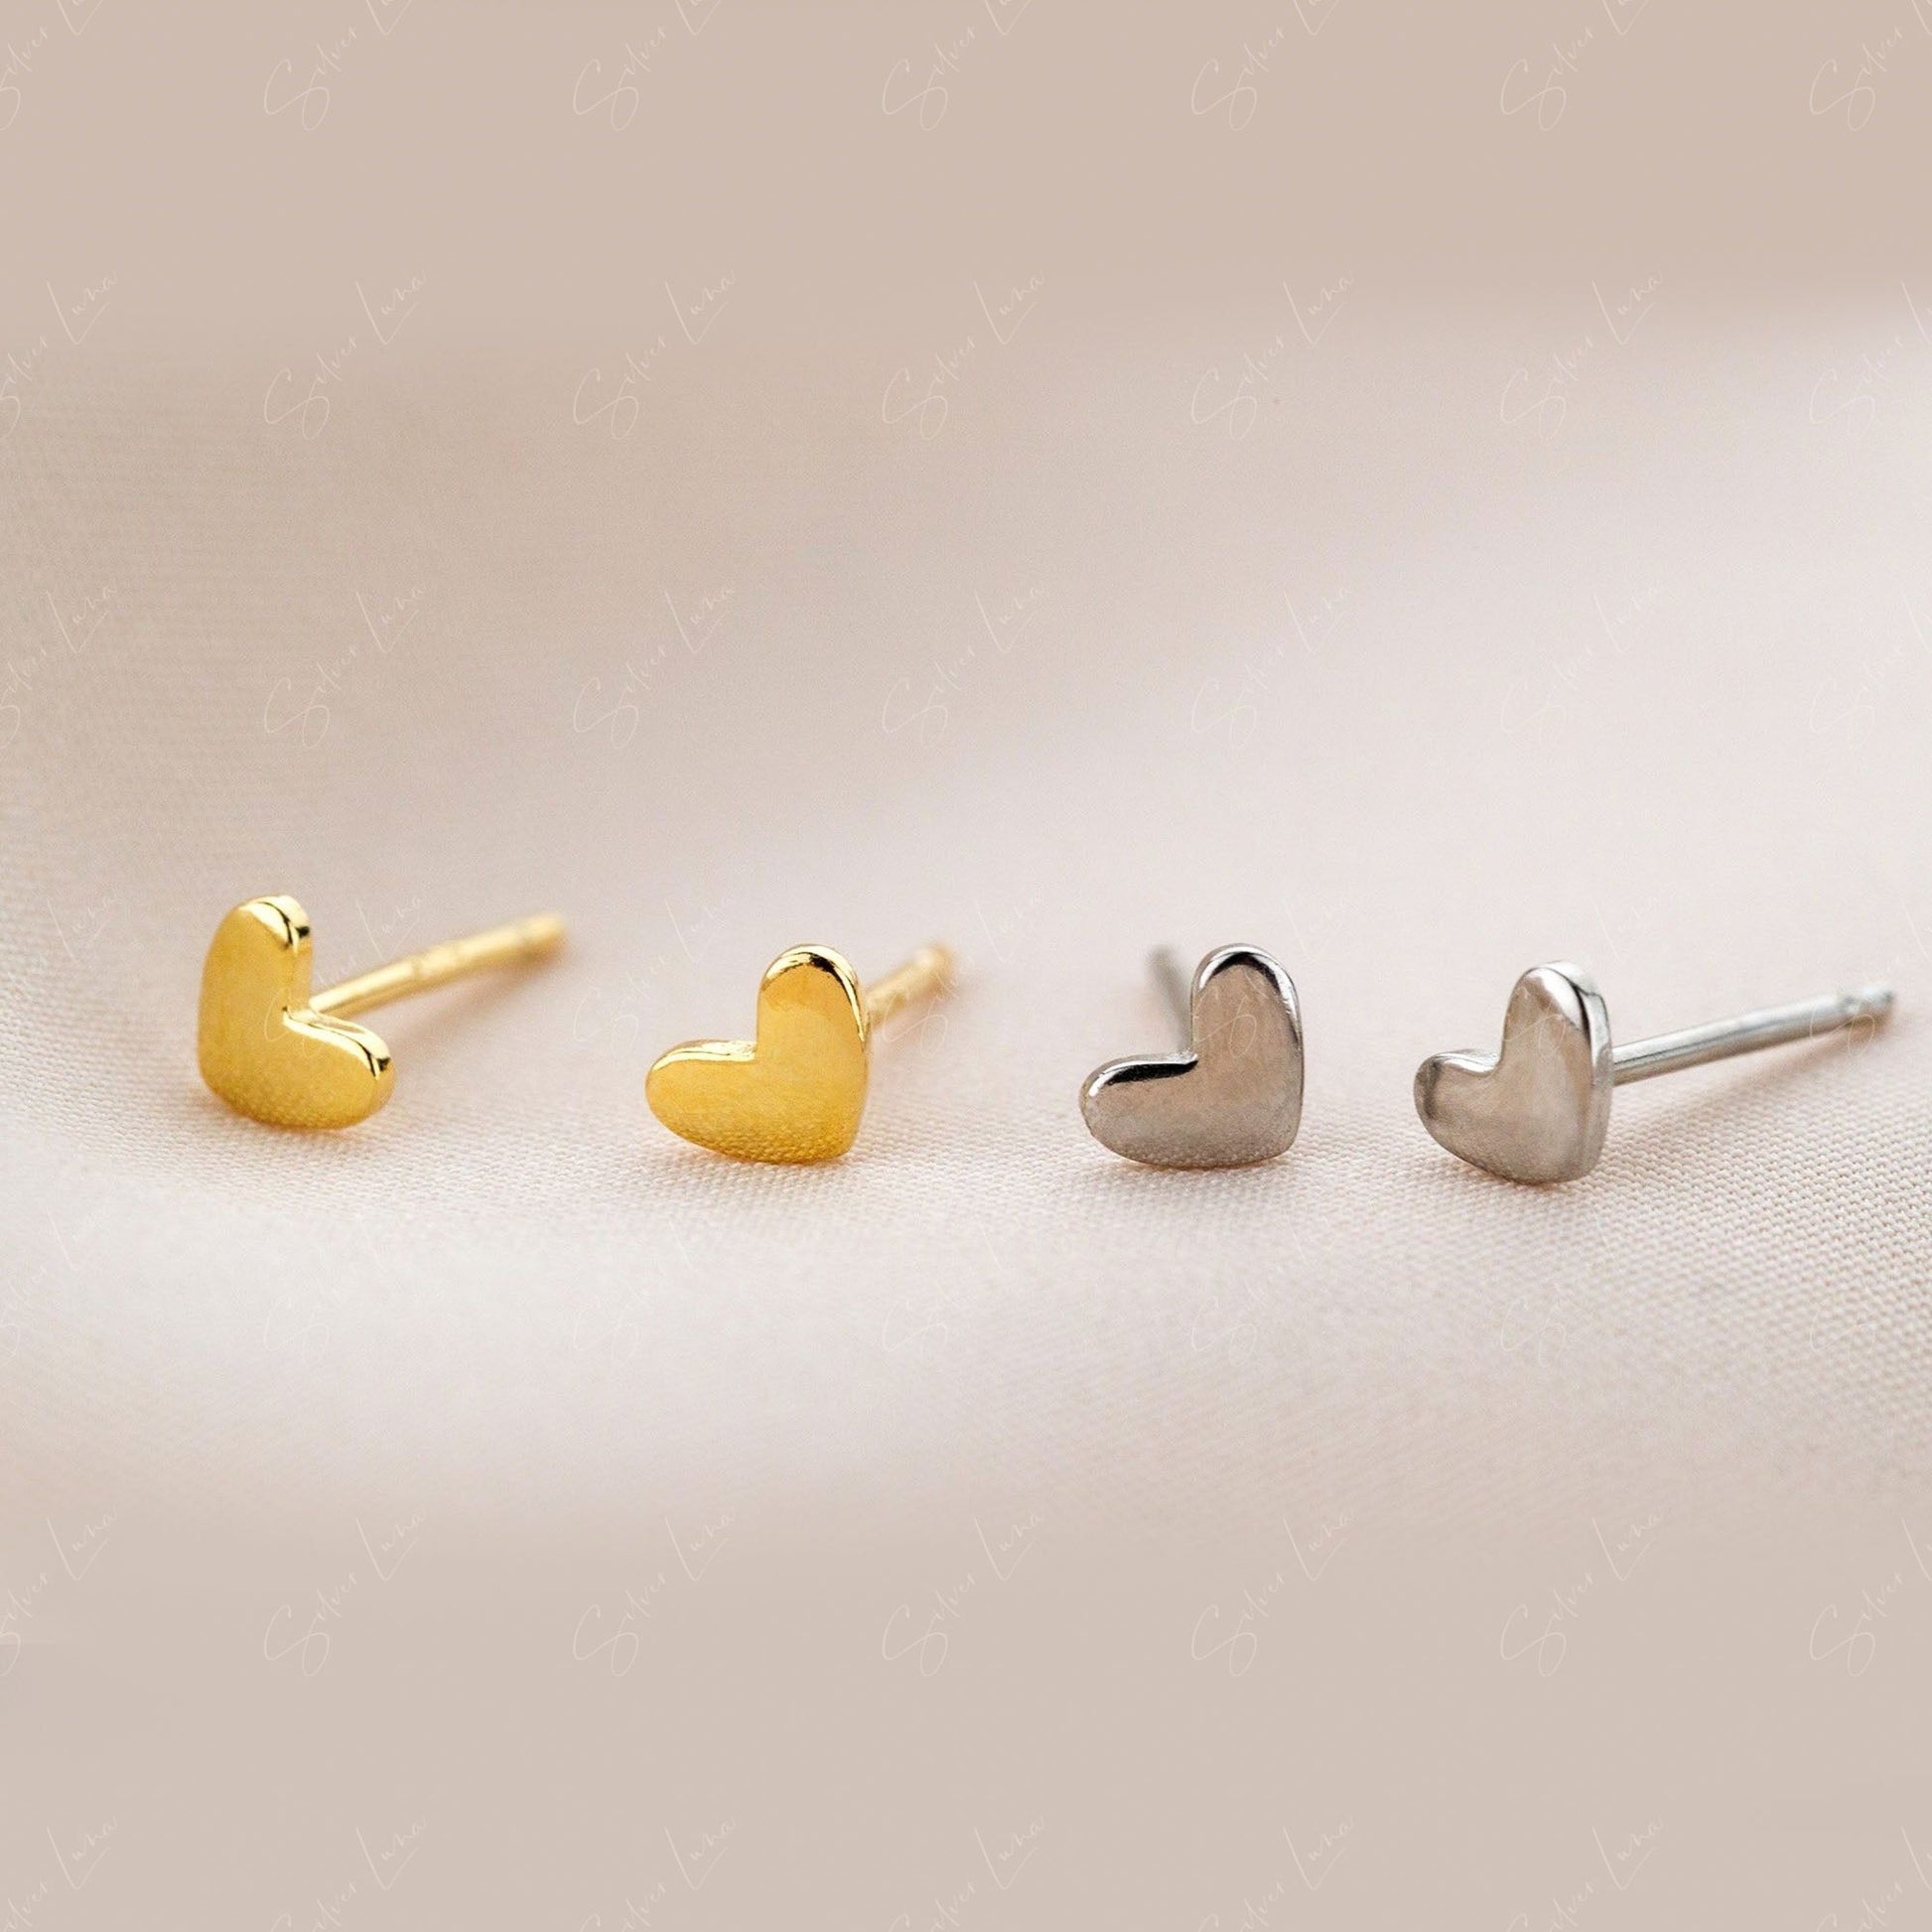 Tiny Minimalist Heart Sterling Silver Stud Earrings